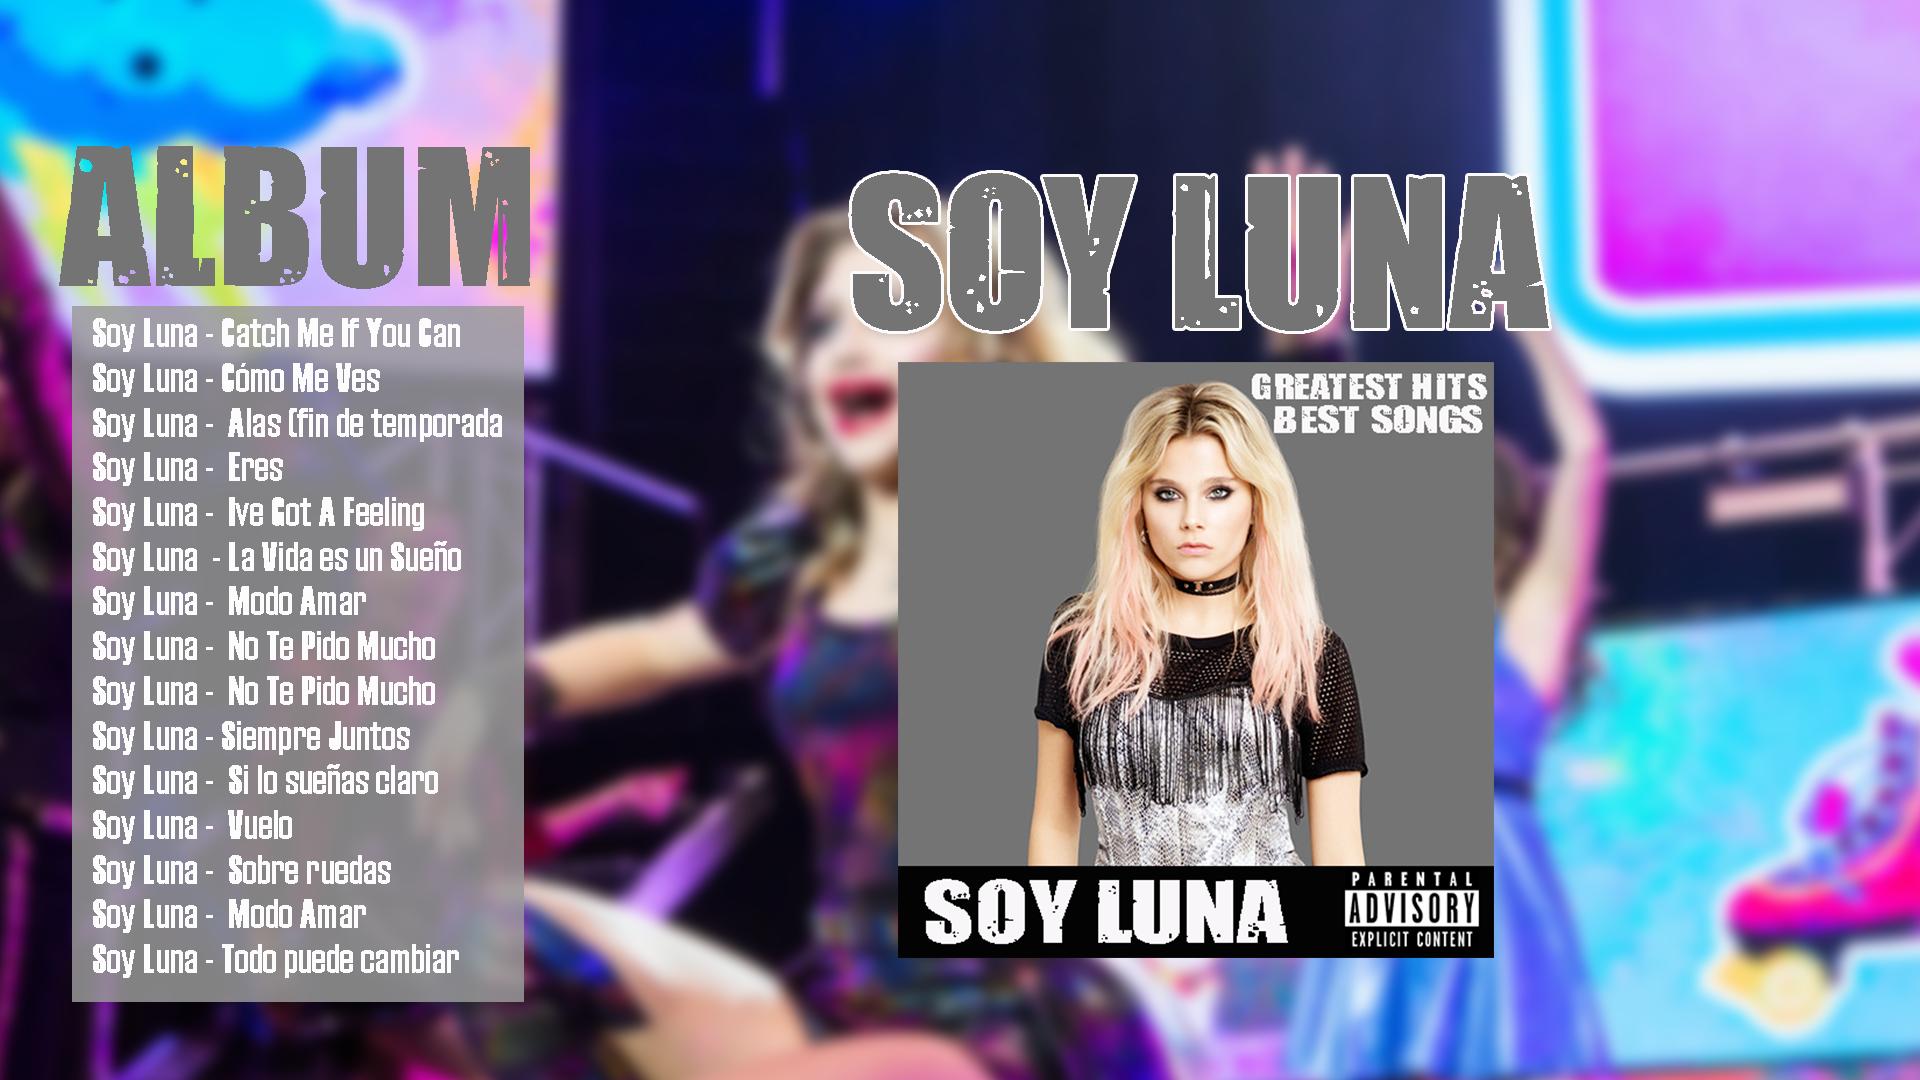 La vida es un sueño soy Luna текст. Песня луна на звонок